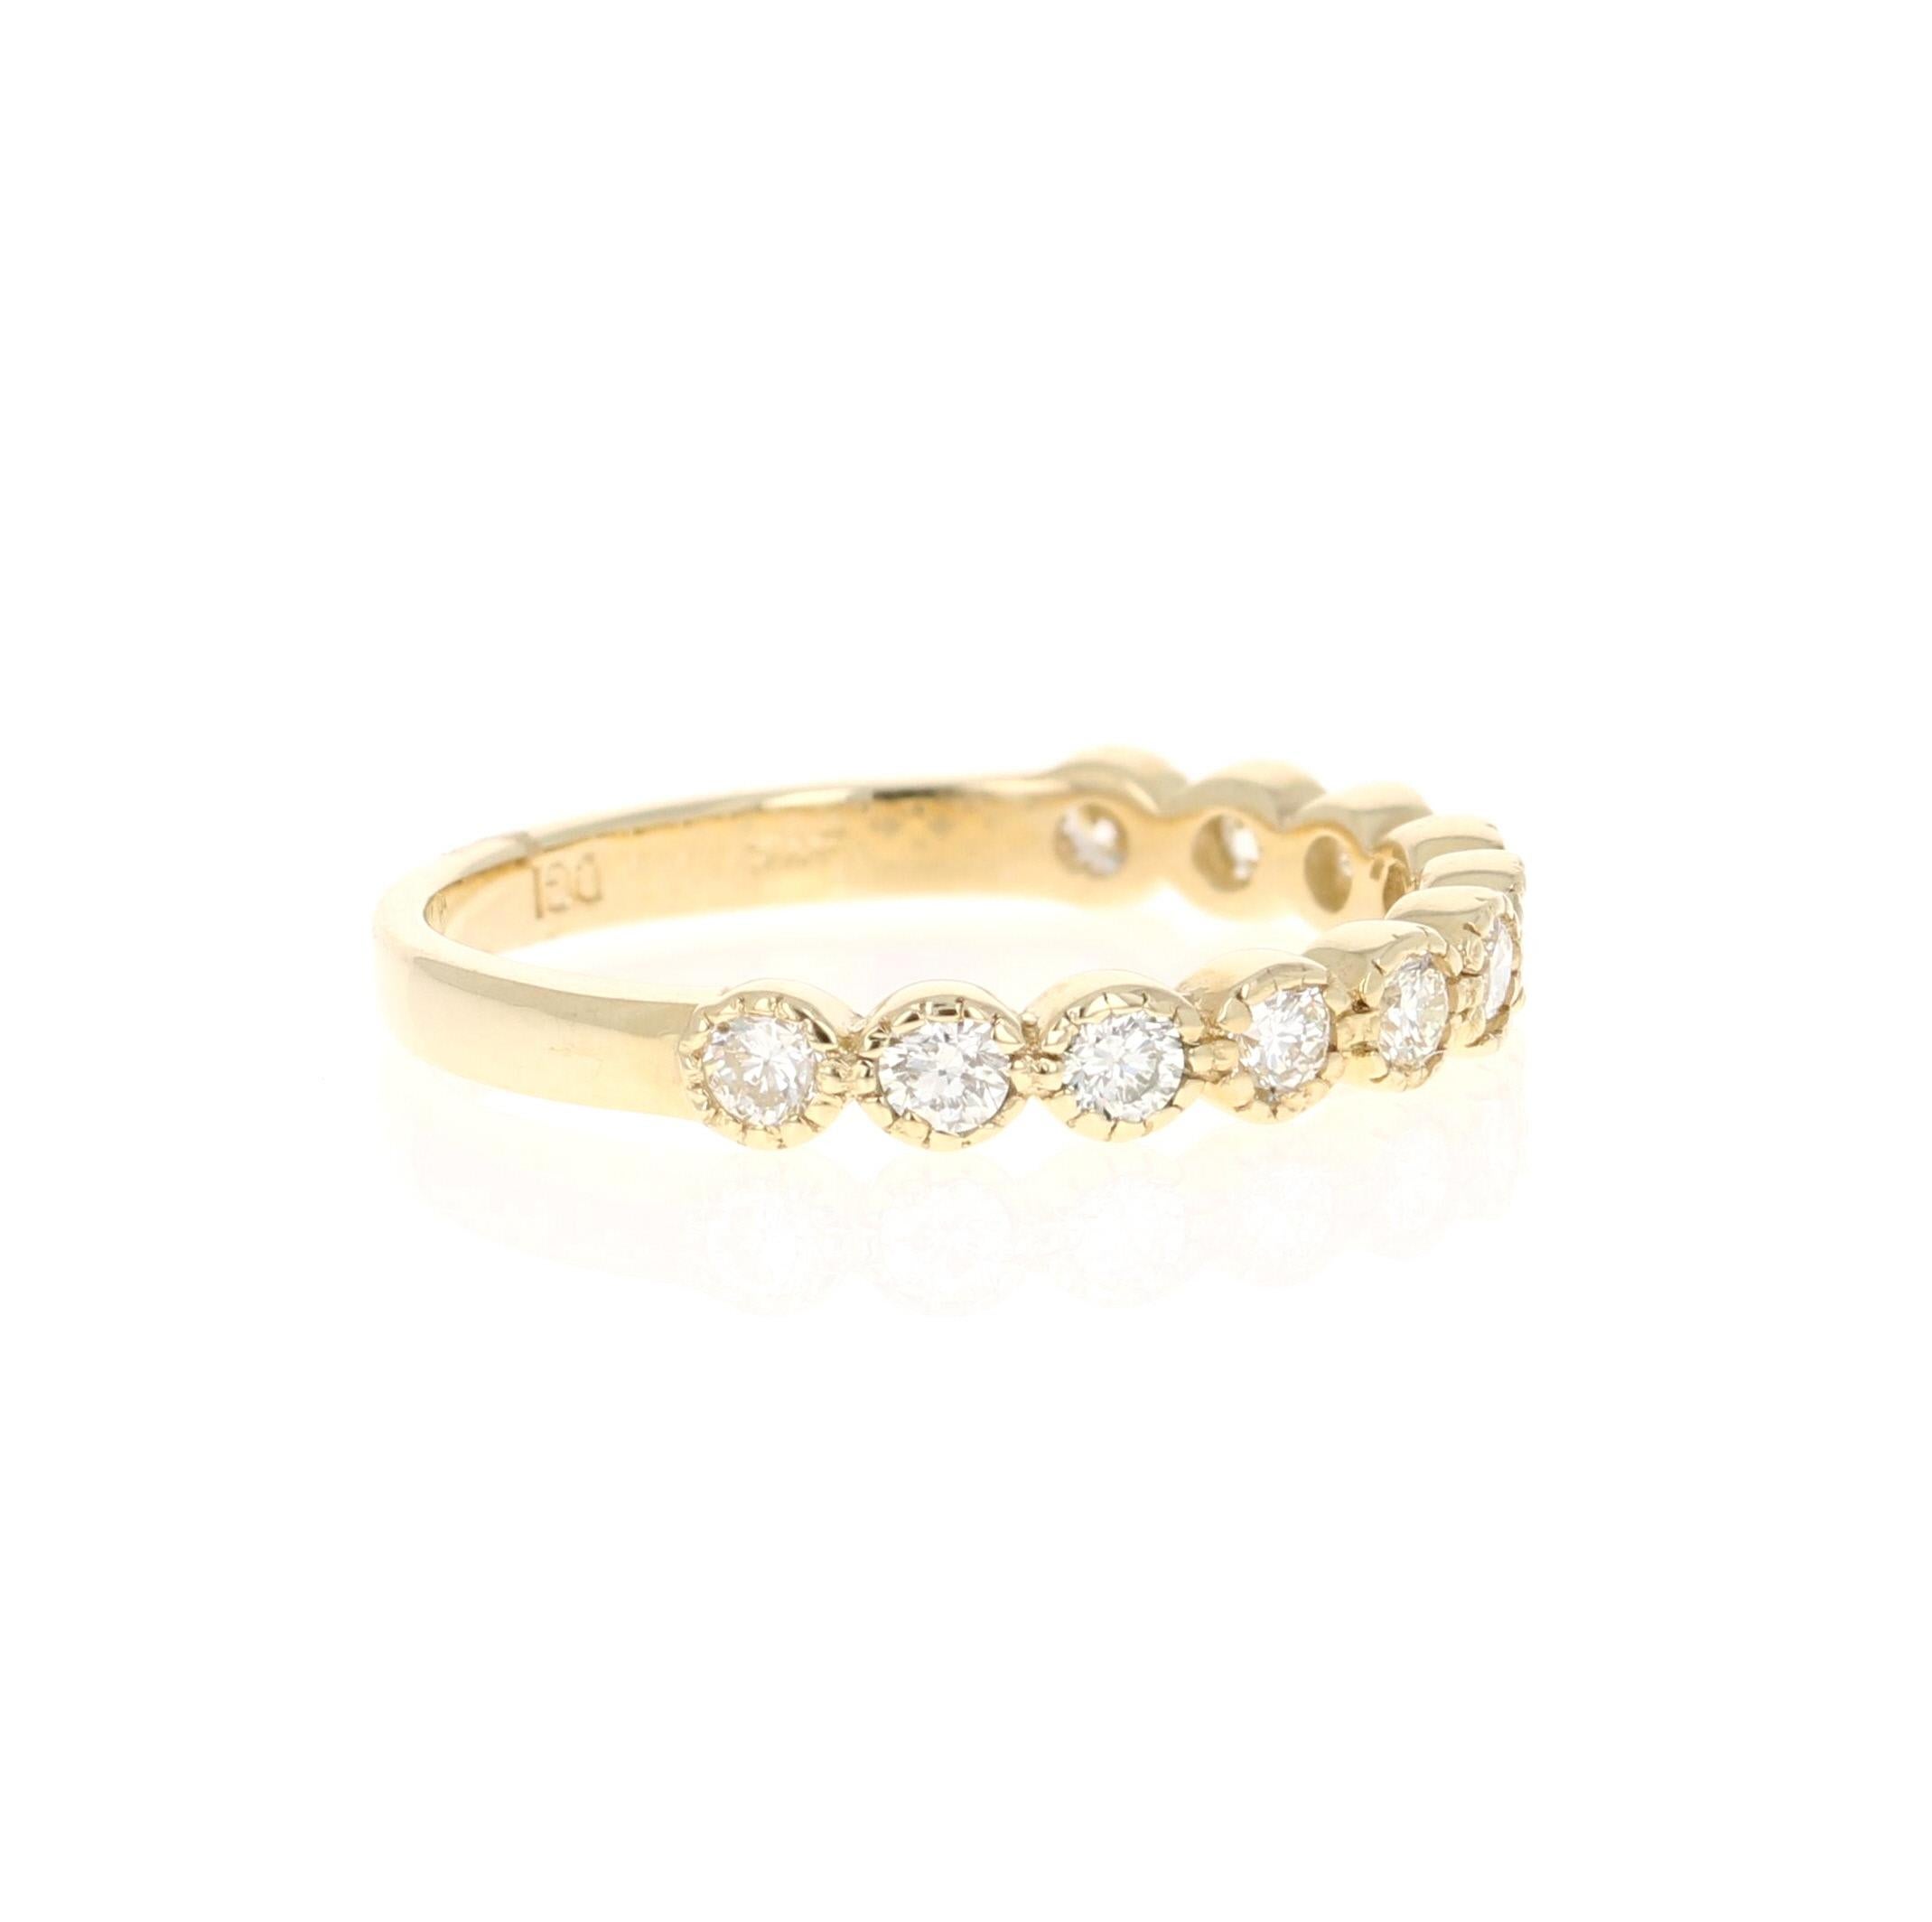 Ein wunderschönes Band, das als einzelnes Band getragen werden kann oder mit anderen Bändern in anderen Goldfarben kombiniert werden kann! 

Dieser Ring hat 11 Diamanten im Rundschliff mit einem Gewicht von 0,44 Karat. Die Reinheit und Farbe der